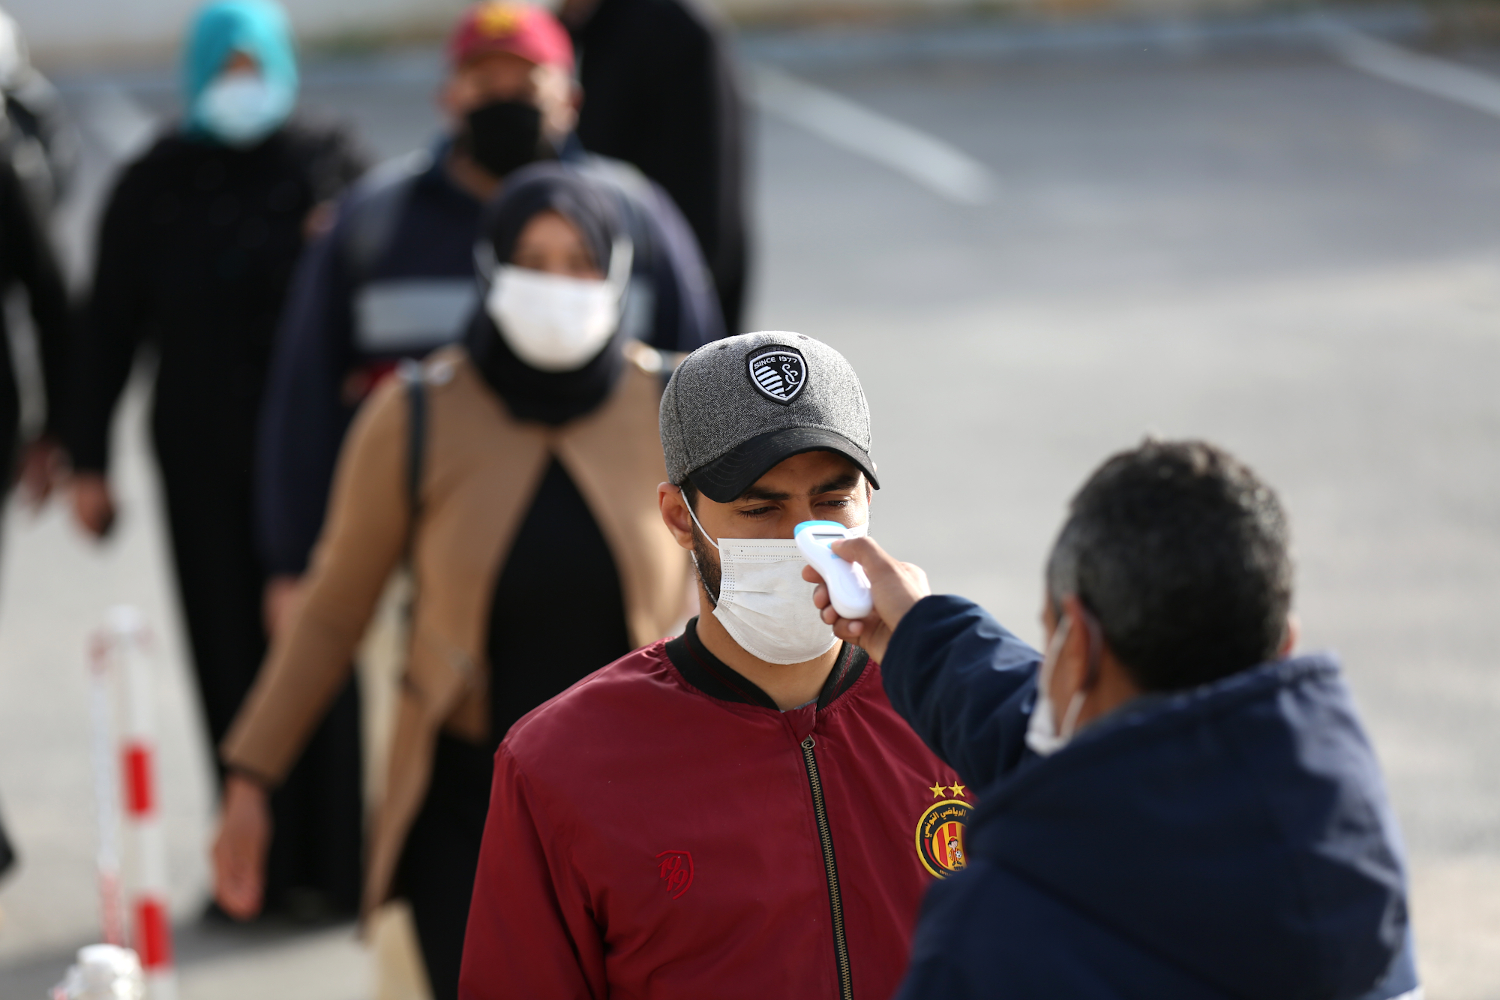 فرد حراسة أمنية يقوم بقياس درجات حرارة العمال في طابور بأحد مصانع مدينة منوبة بعد إعلان الحظر العام يوم 22 مارس 2020 لمجابهة جائحة كوفيد-19، تونس، 14 أبريل 2020. رويترز، محمد كريت.